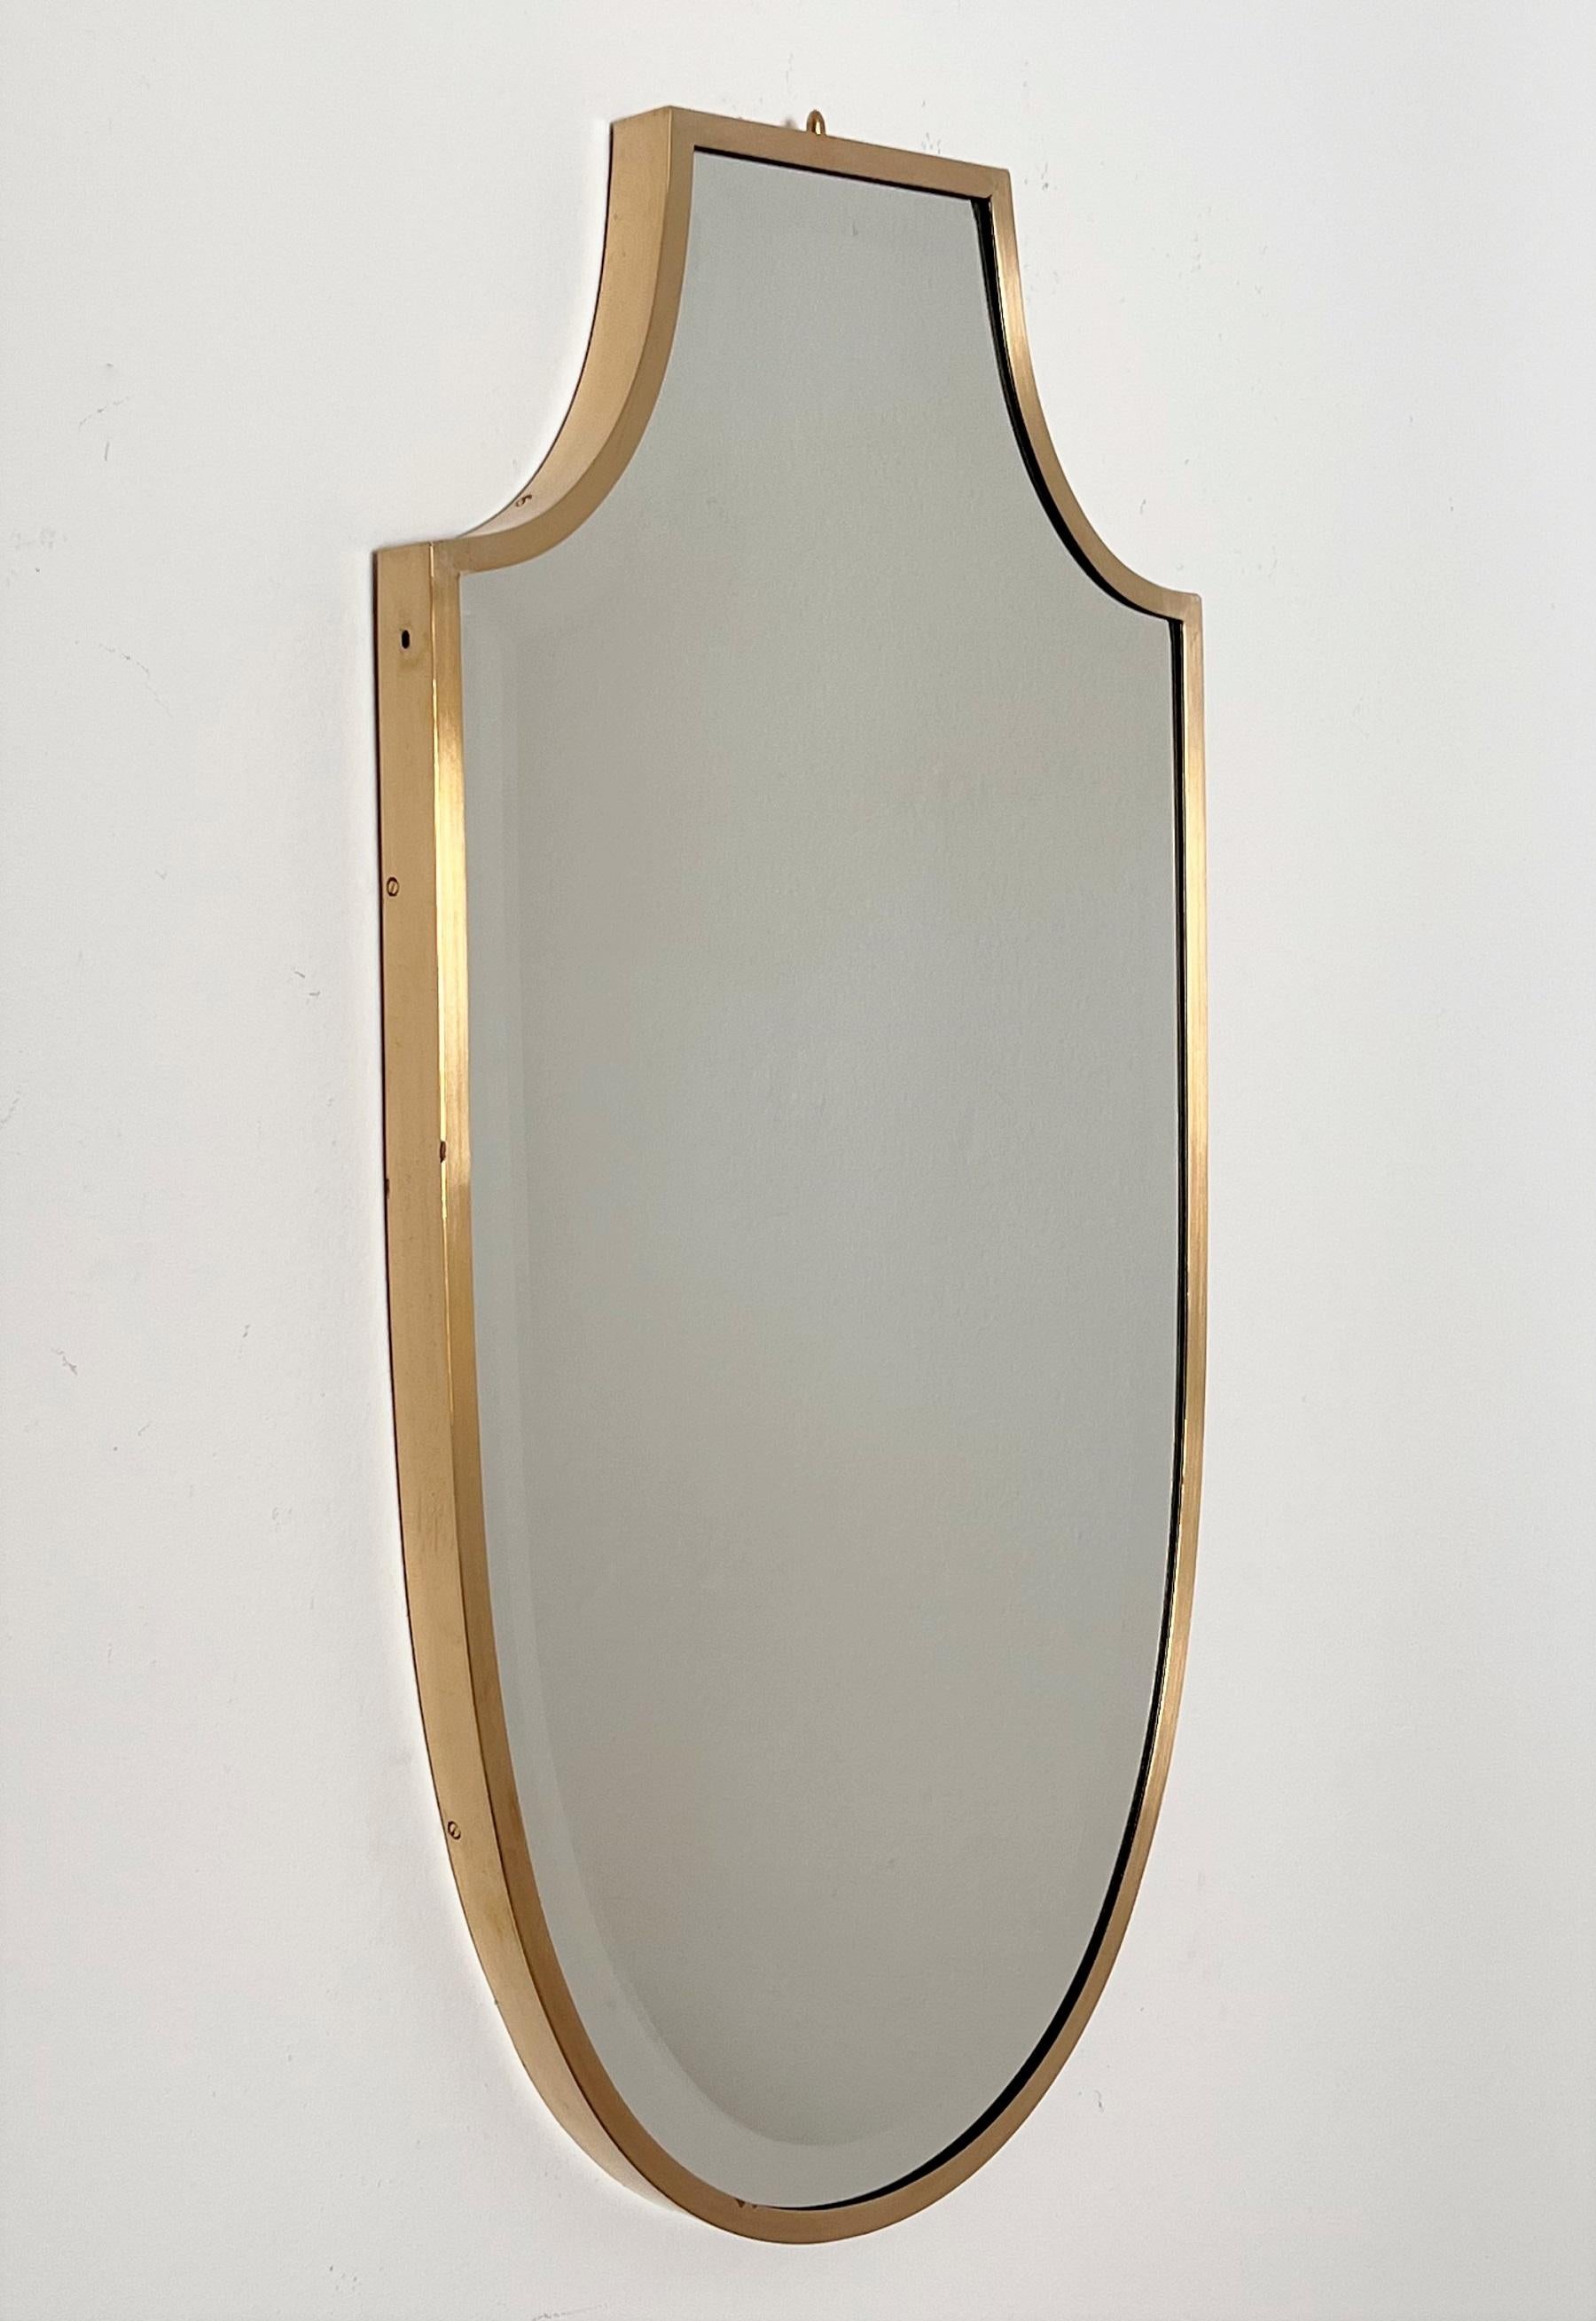 Magnifique miroir mural en forme de bouclier avec miroir en verre taillé d'excellente facture.
Fabriqué en Italie à la fin des années 1970.
Le cadre plein et épais en laiton a été nettoyé professionnellement, le verre miroir avec bordure en verre